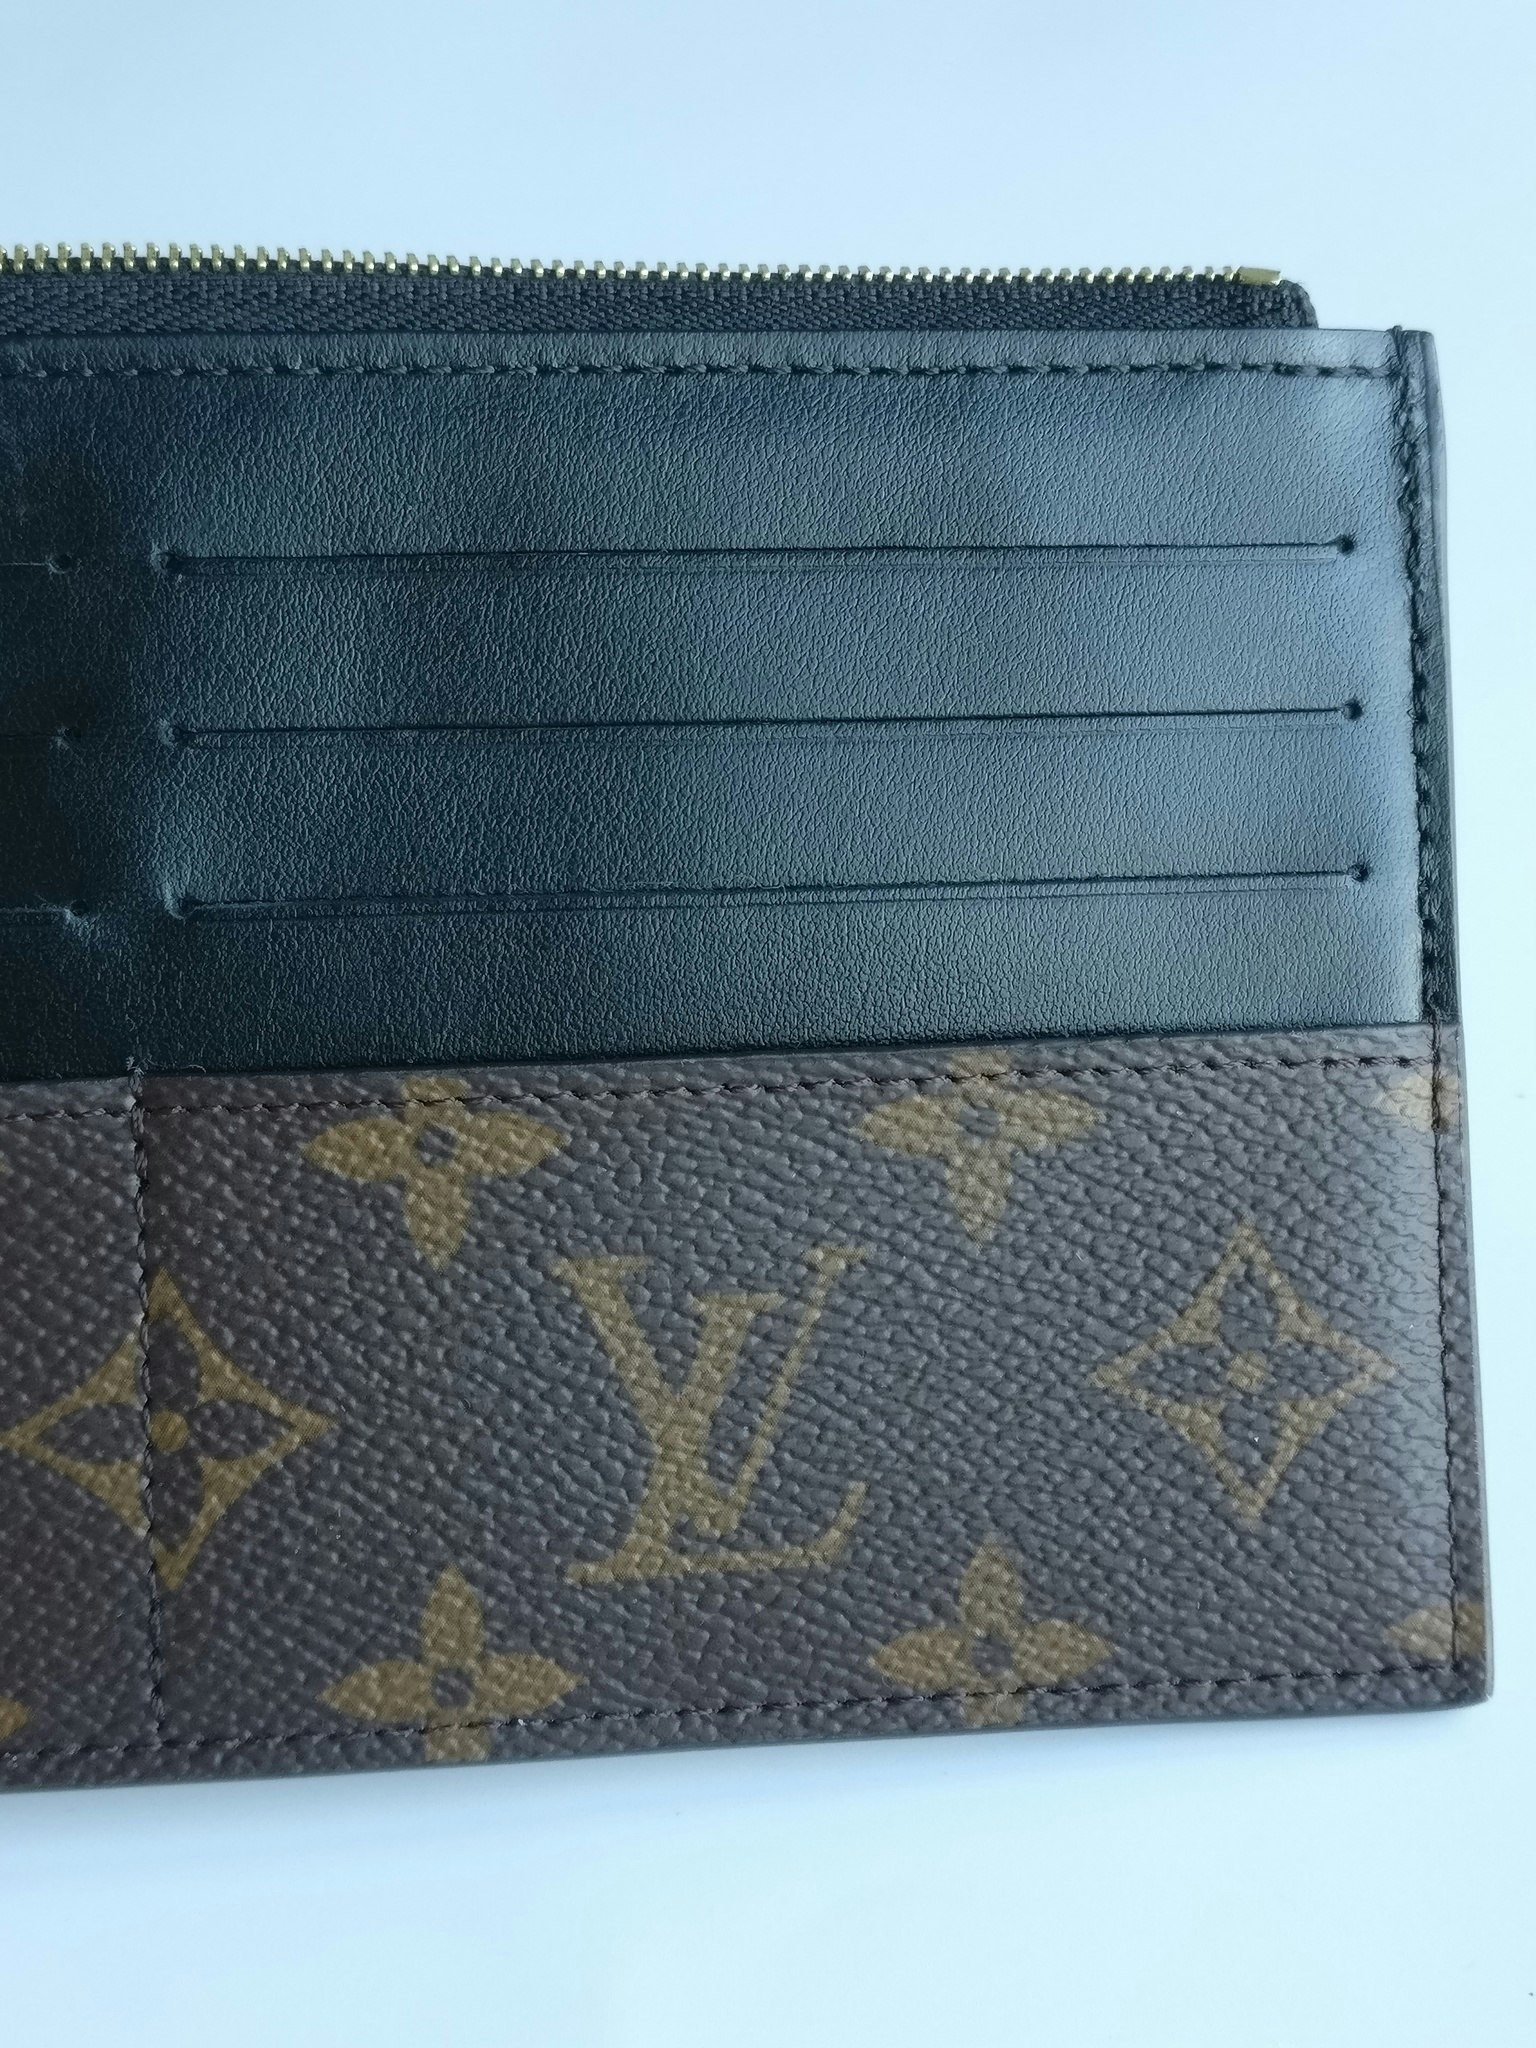 Shop Louis Vuitton 2021 SS Slim purse (M80390, M80348) by RedondoBeach-LA